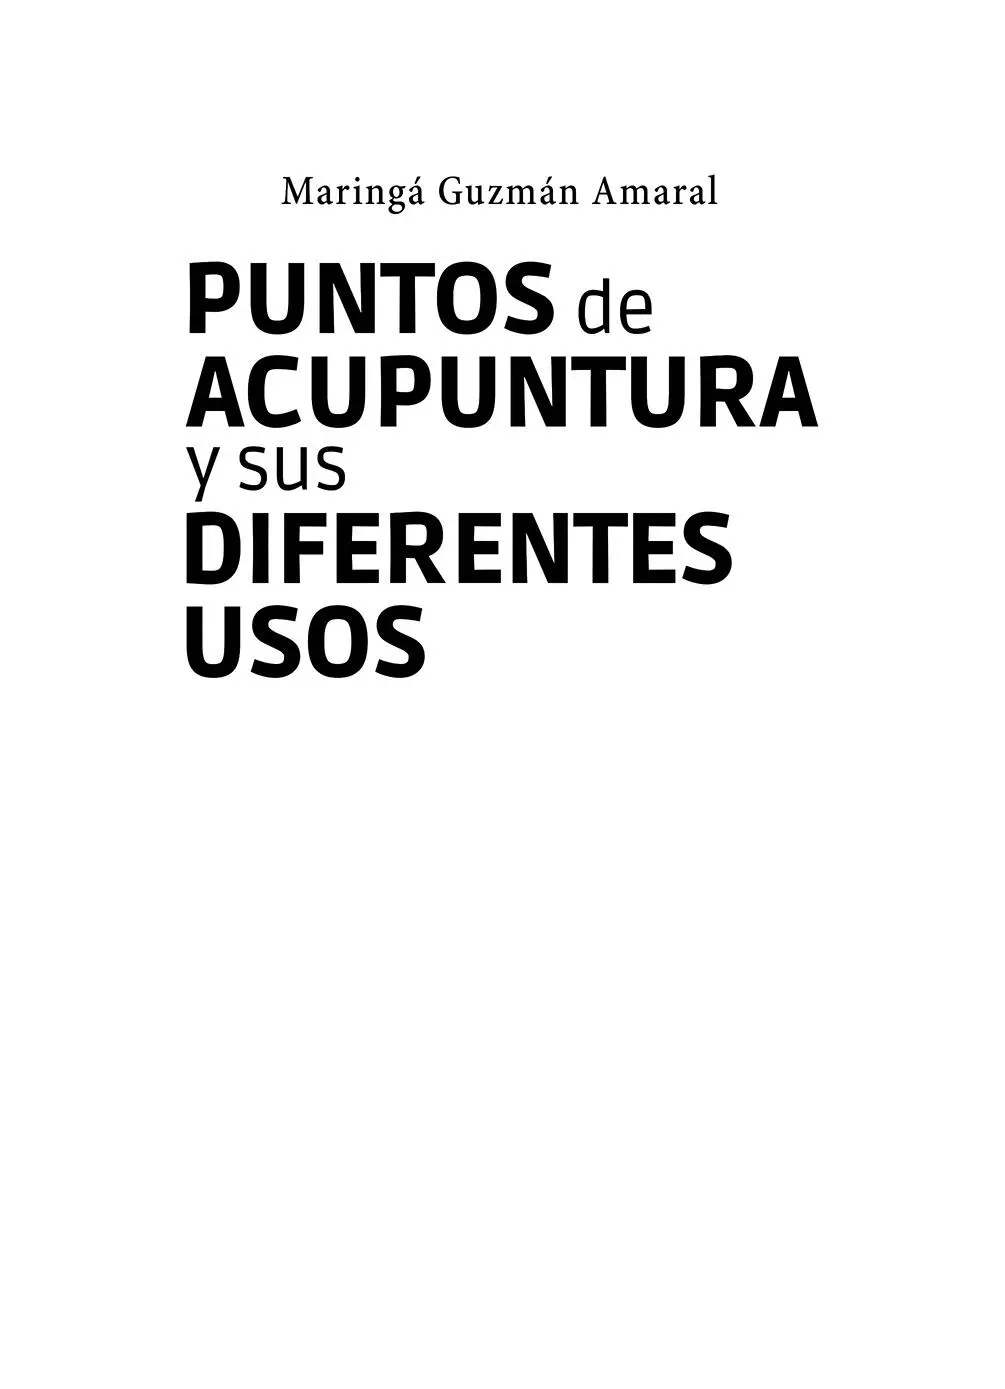 Puntos de acupuntura y sus diferentes usos Maringá Guzmán Amaral Imágenes - фото 1